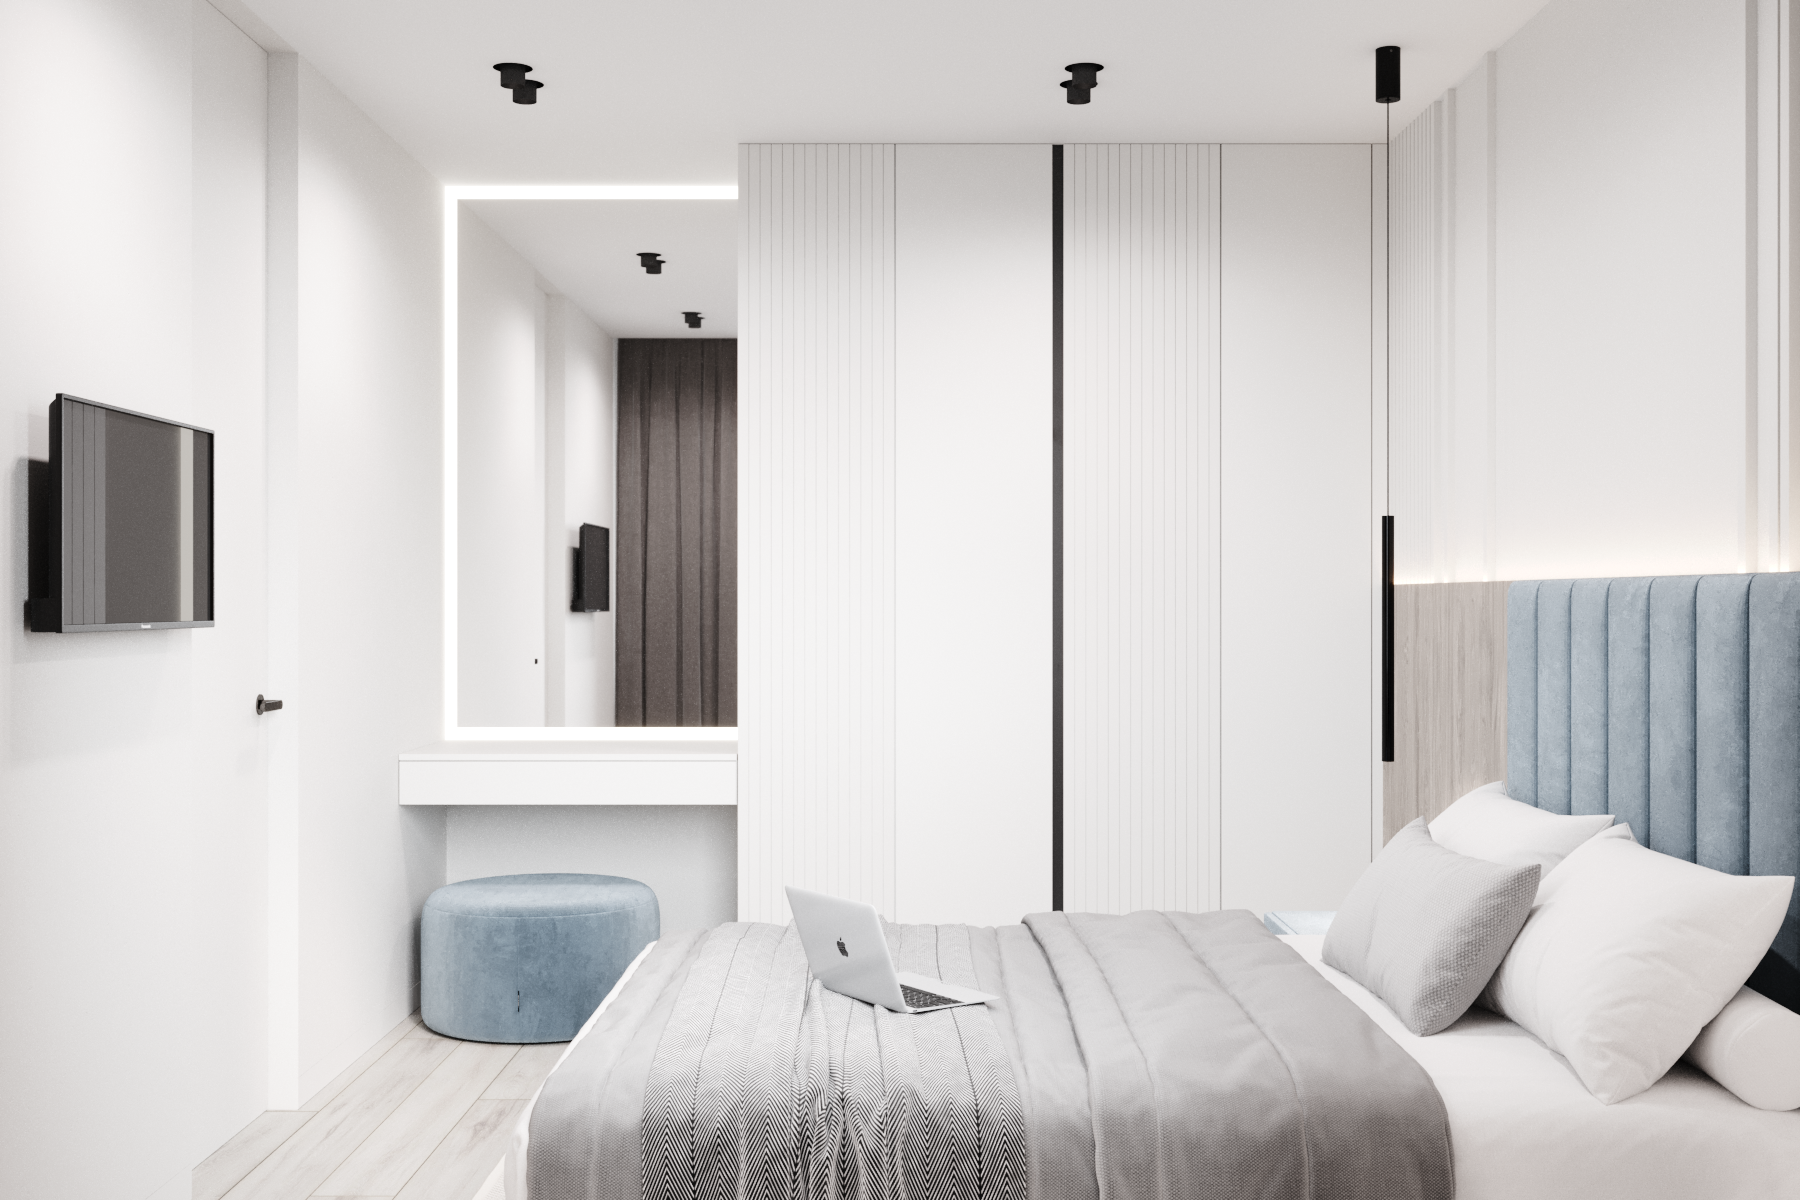 Интерьер спальни cветовыми линиями, подсветкой светодиодной, светильниками над кроватью, шкафом над кроватью и шкафом у кровати в стиле лофт